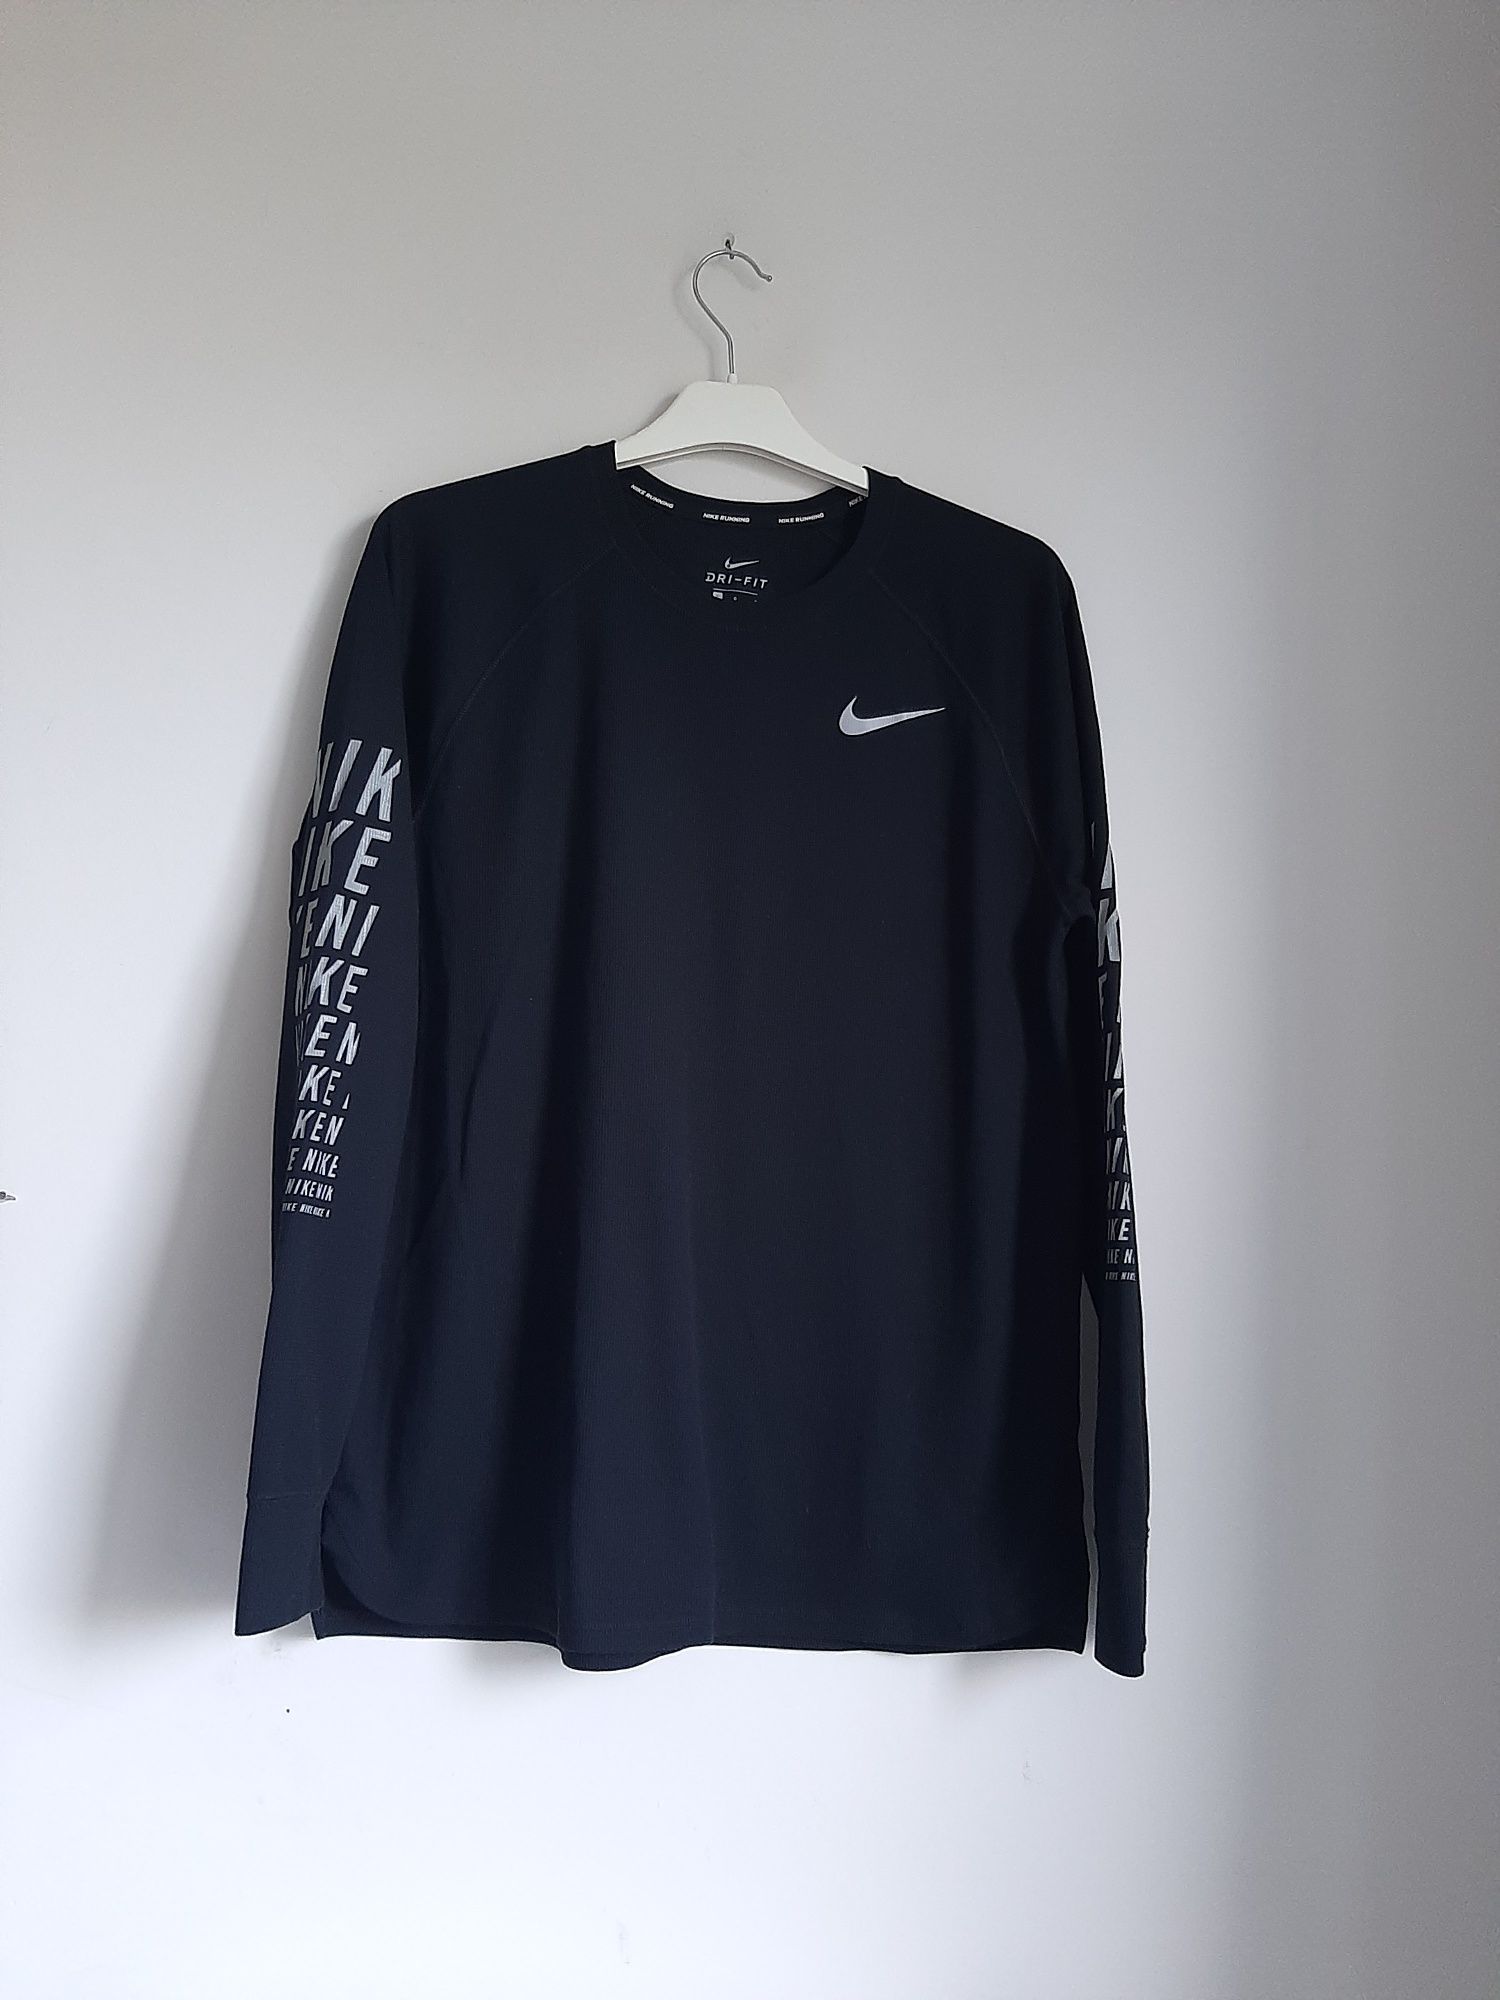 Bluzka Nike      XL